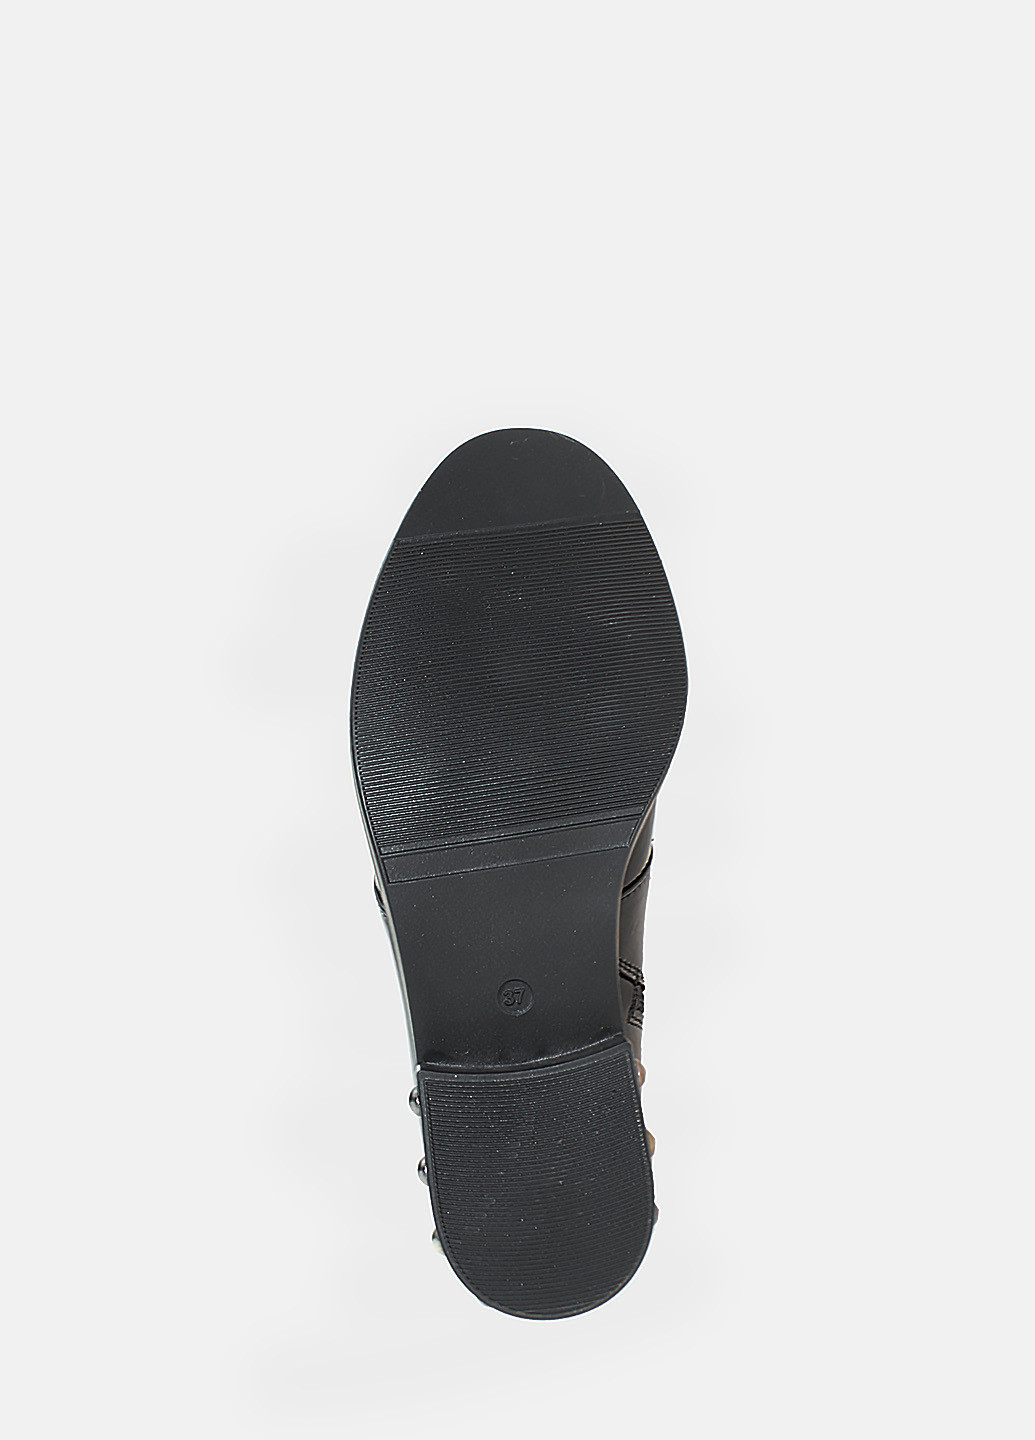 Осенние ботинки reб4305 черный Eleni из натуральной замши